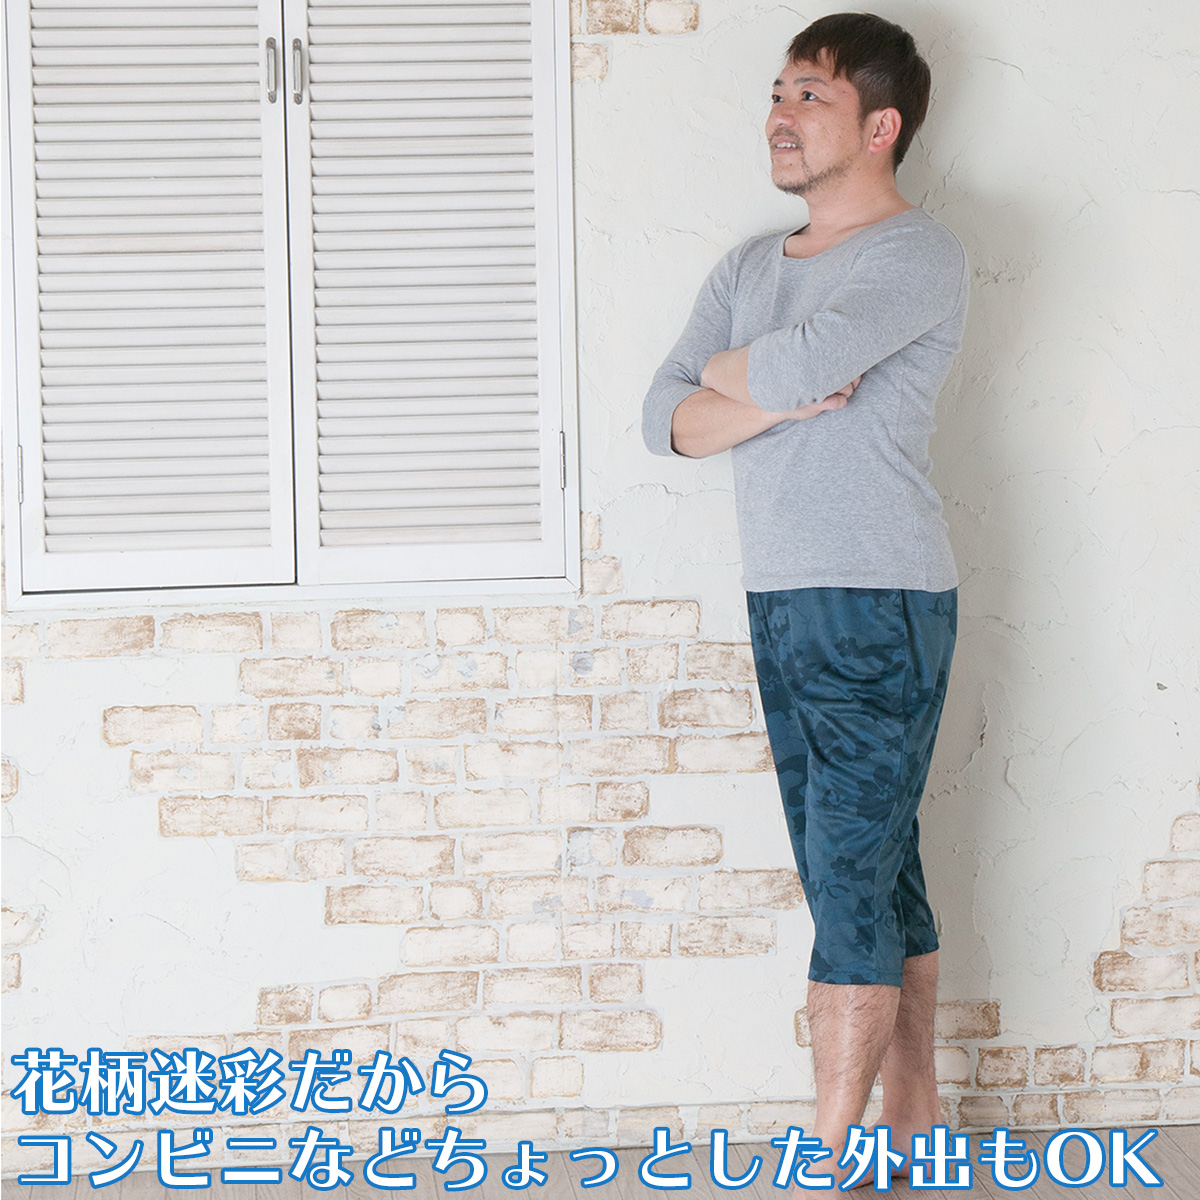 1059円 【60%OFF!】 ロングトランクス3色組 ネイビー チャコール カーキ 3L